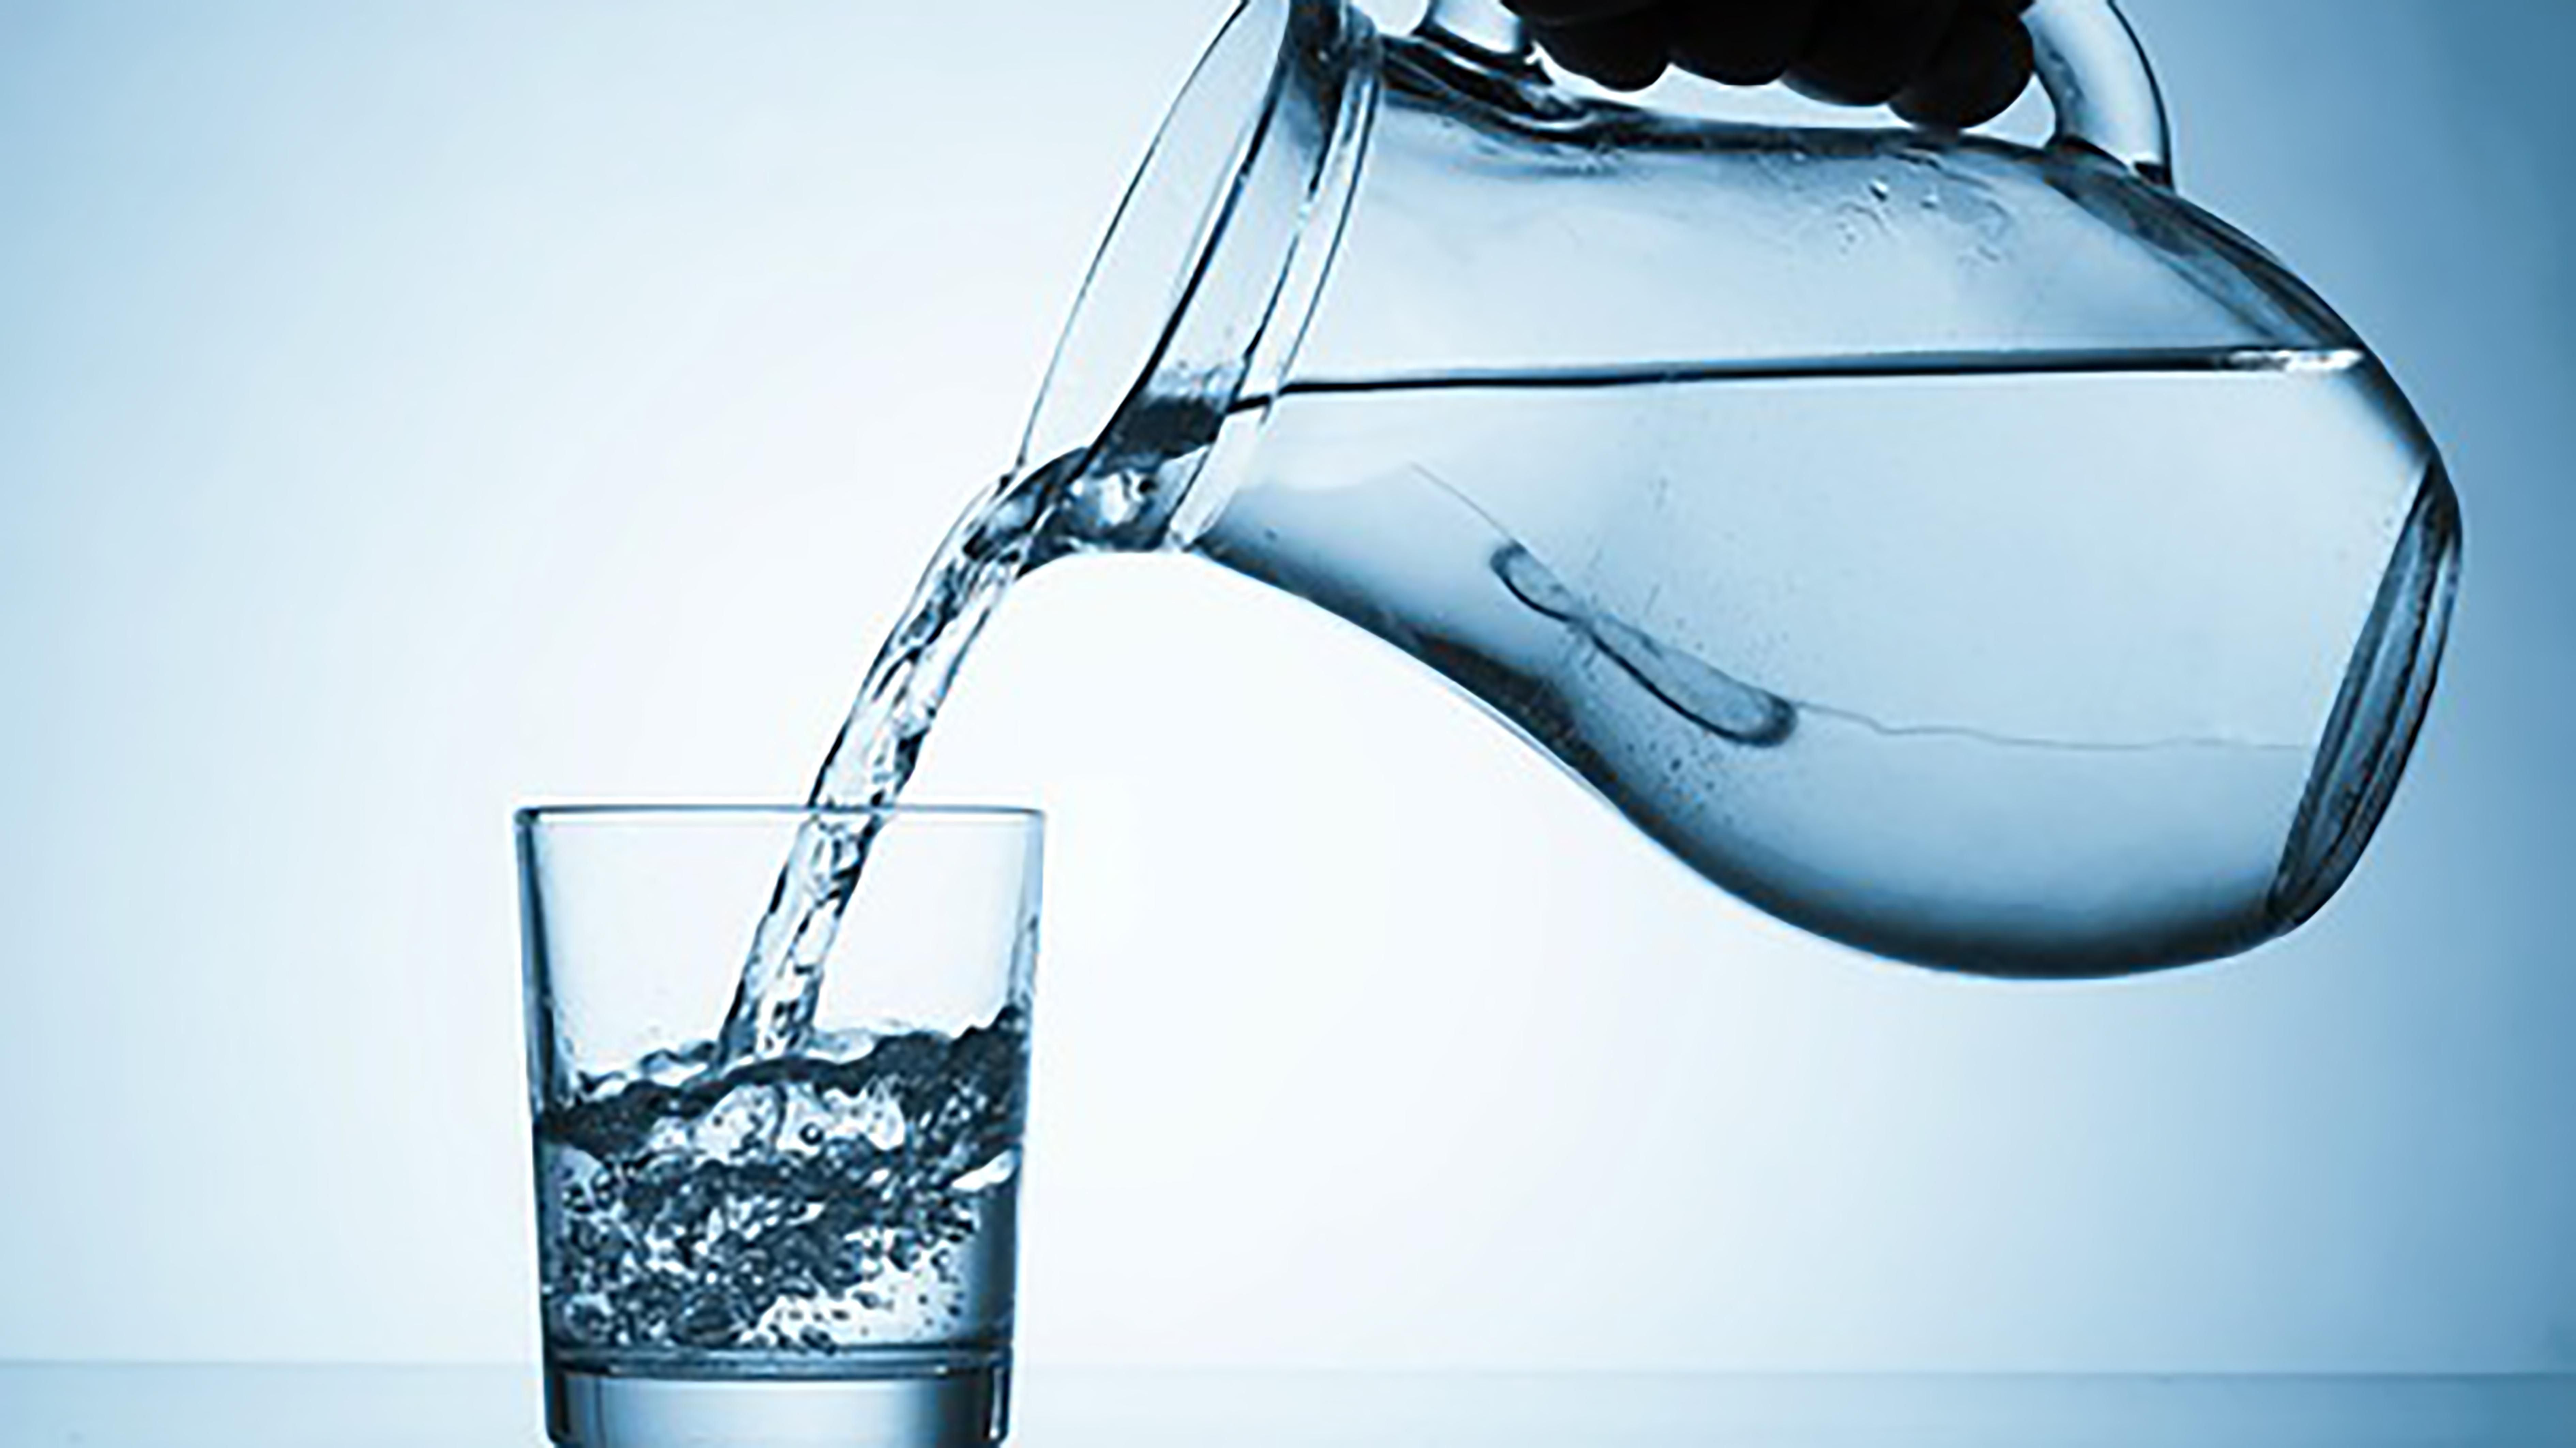 Корисна чи шкідлива: скільки насправді потрібно пити води